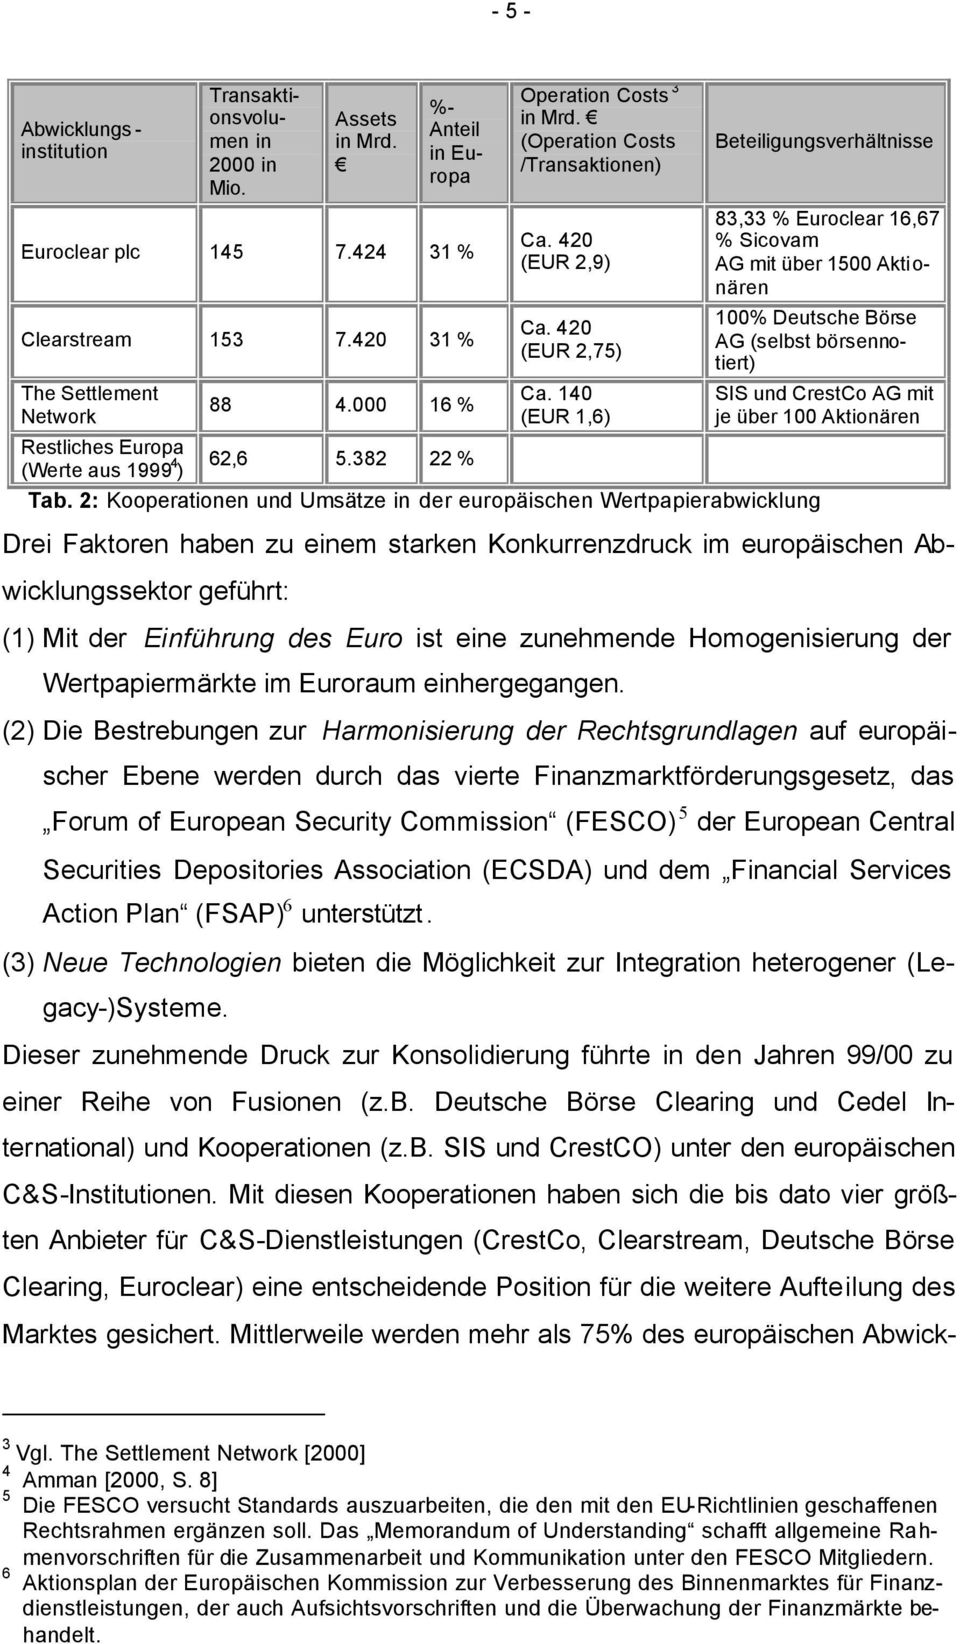 140 (EUR 1,6) Beteiligungsverhältnisse 83,33 % Euroclear 16,67 % Sicovam AG mit über 1500 Aktionären 100% Deutsche Börse AG (selbst börsennotiert) SIS und CrestCo AG mit je über 100 Aktionären